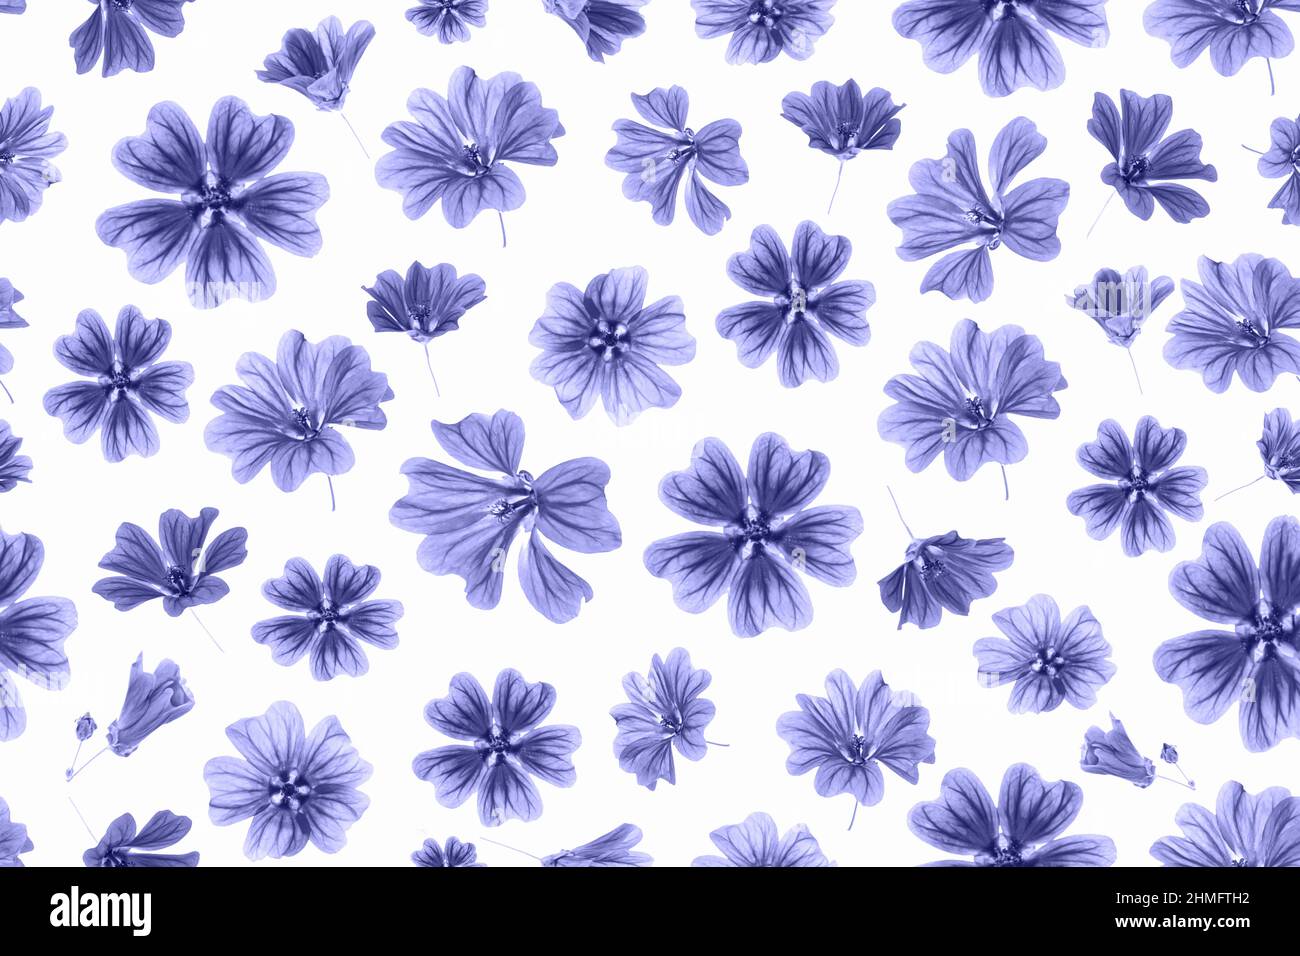 Motif de fleurs violettes sur fond blanc, comme toile de fond ou texture. Papier peint printemps, été. Vue de dessus Flat lay. Couleur tendance de l'année 2022. Banque D'Images